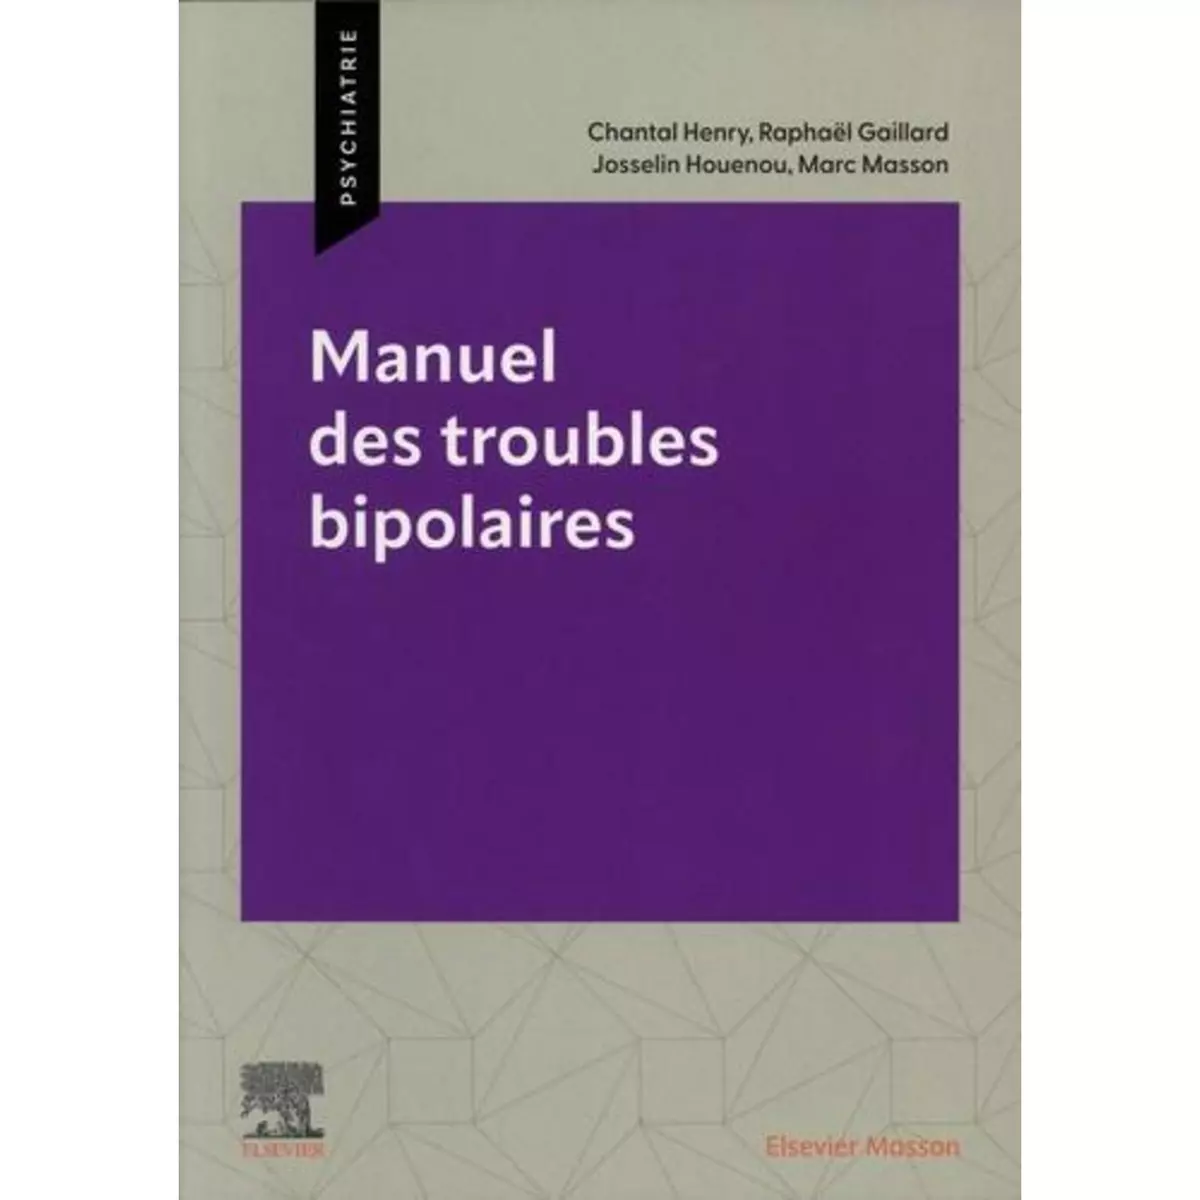  MANUEL DES TROUBLES BIPOLAIRES, Henry Chantal